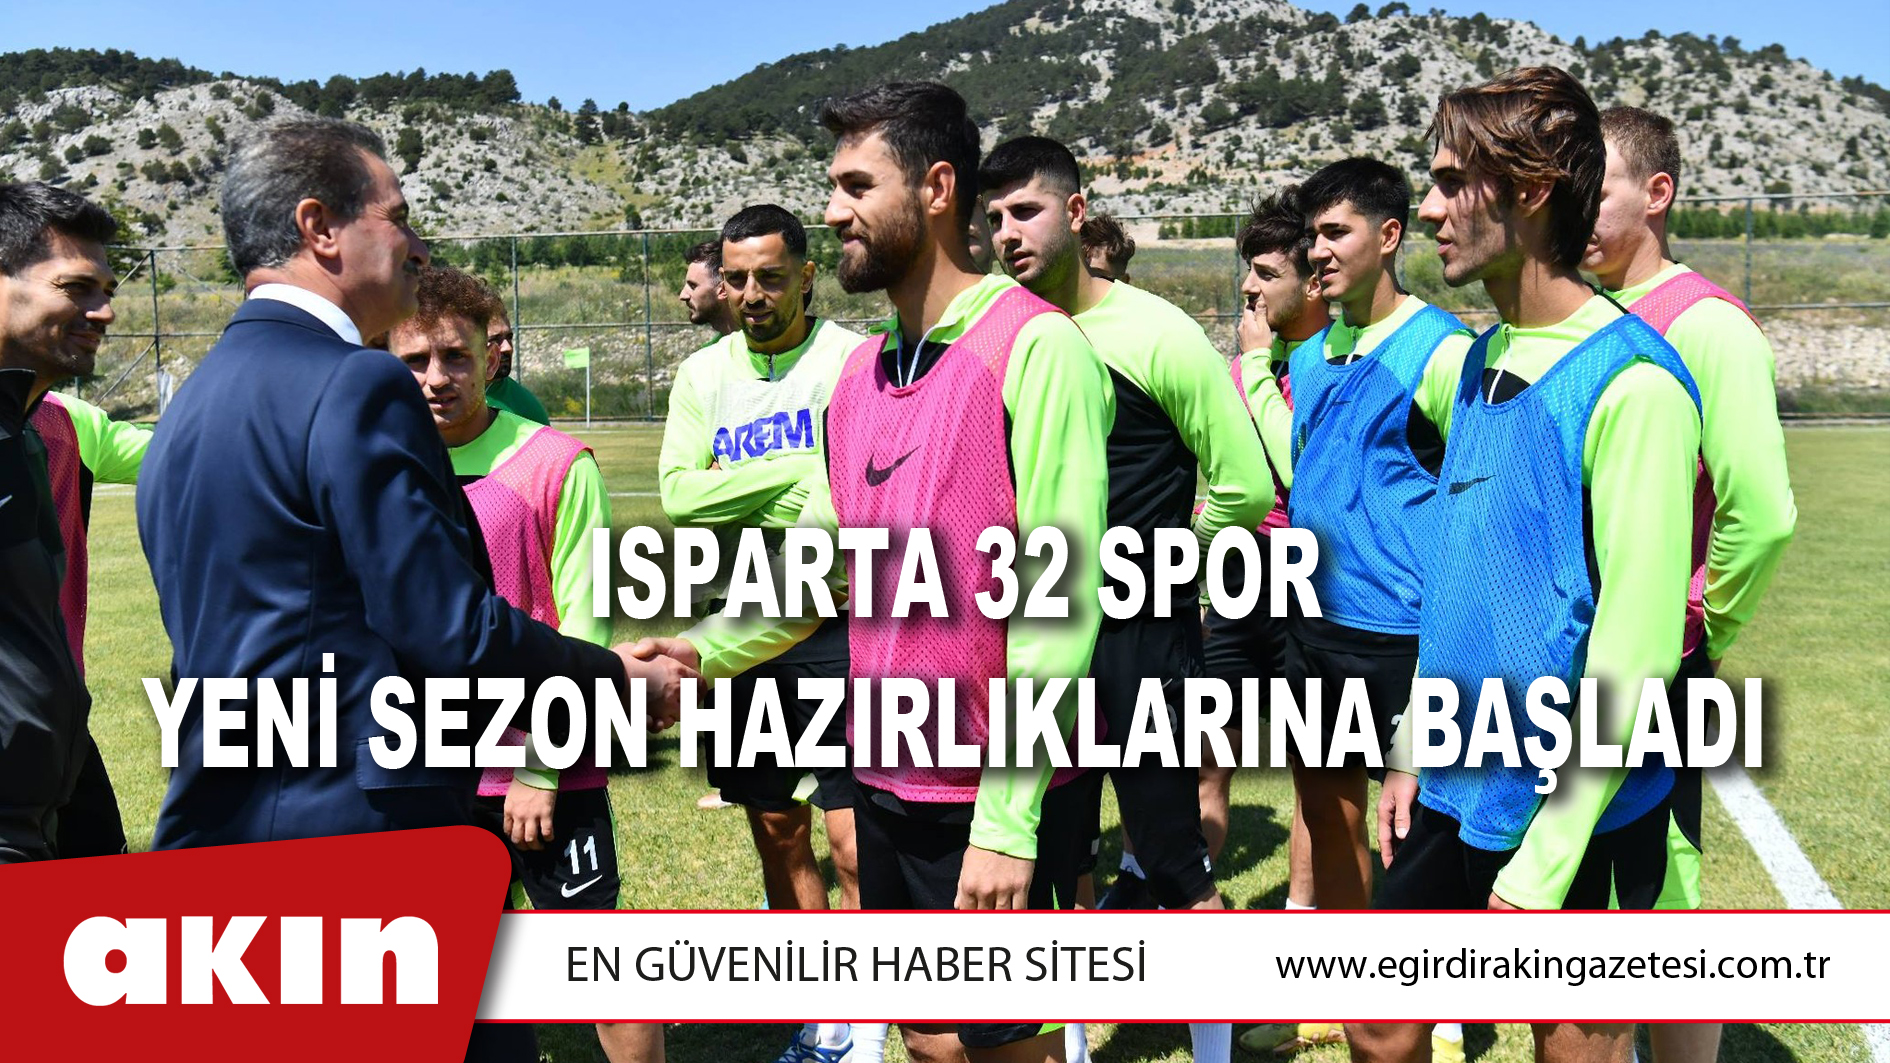 eğirdir haber,akın gazetesi,egirdir haberler,son dakika,Isparta 32 Spor Yeni Sezon Hazırlıklarına Başladı